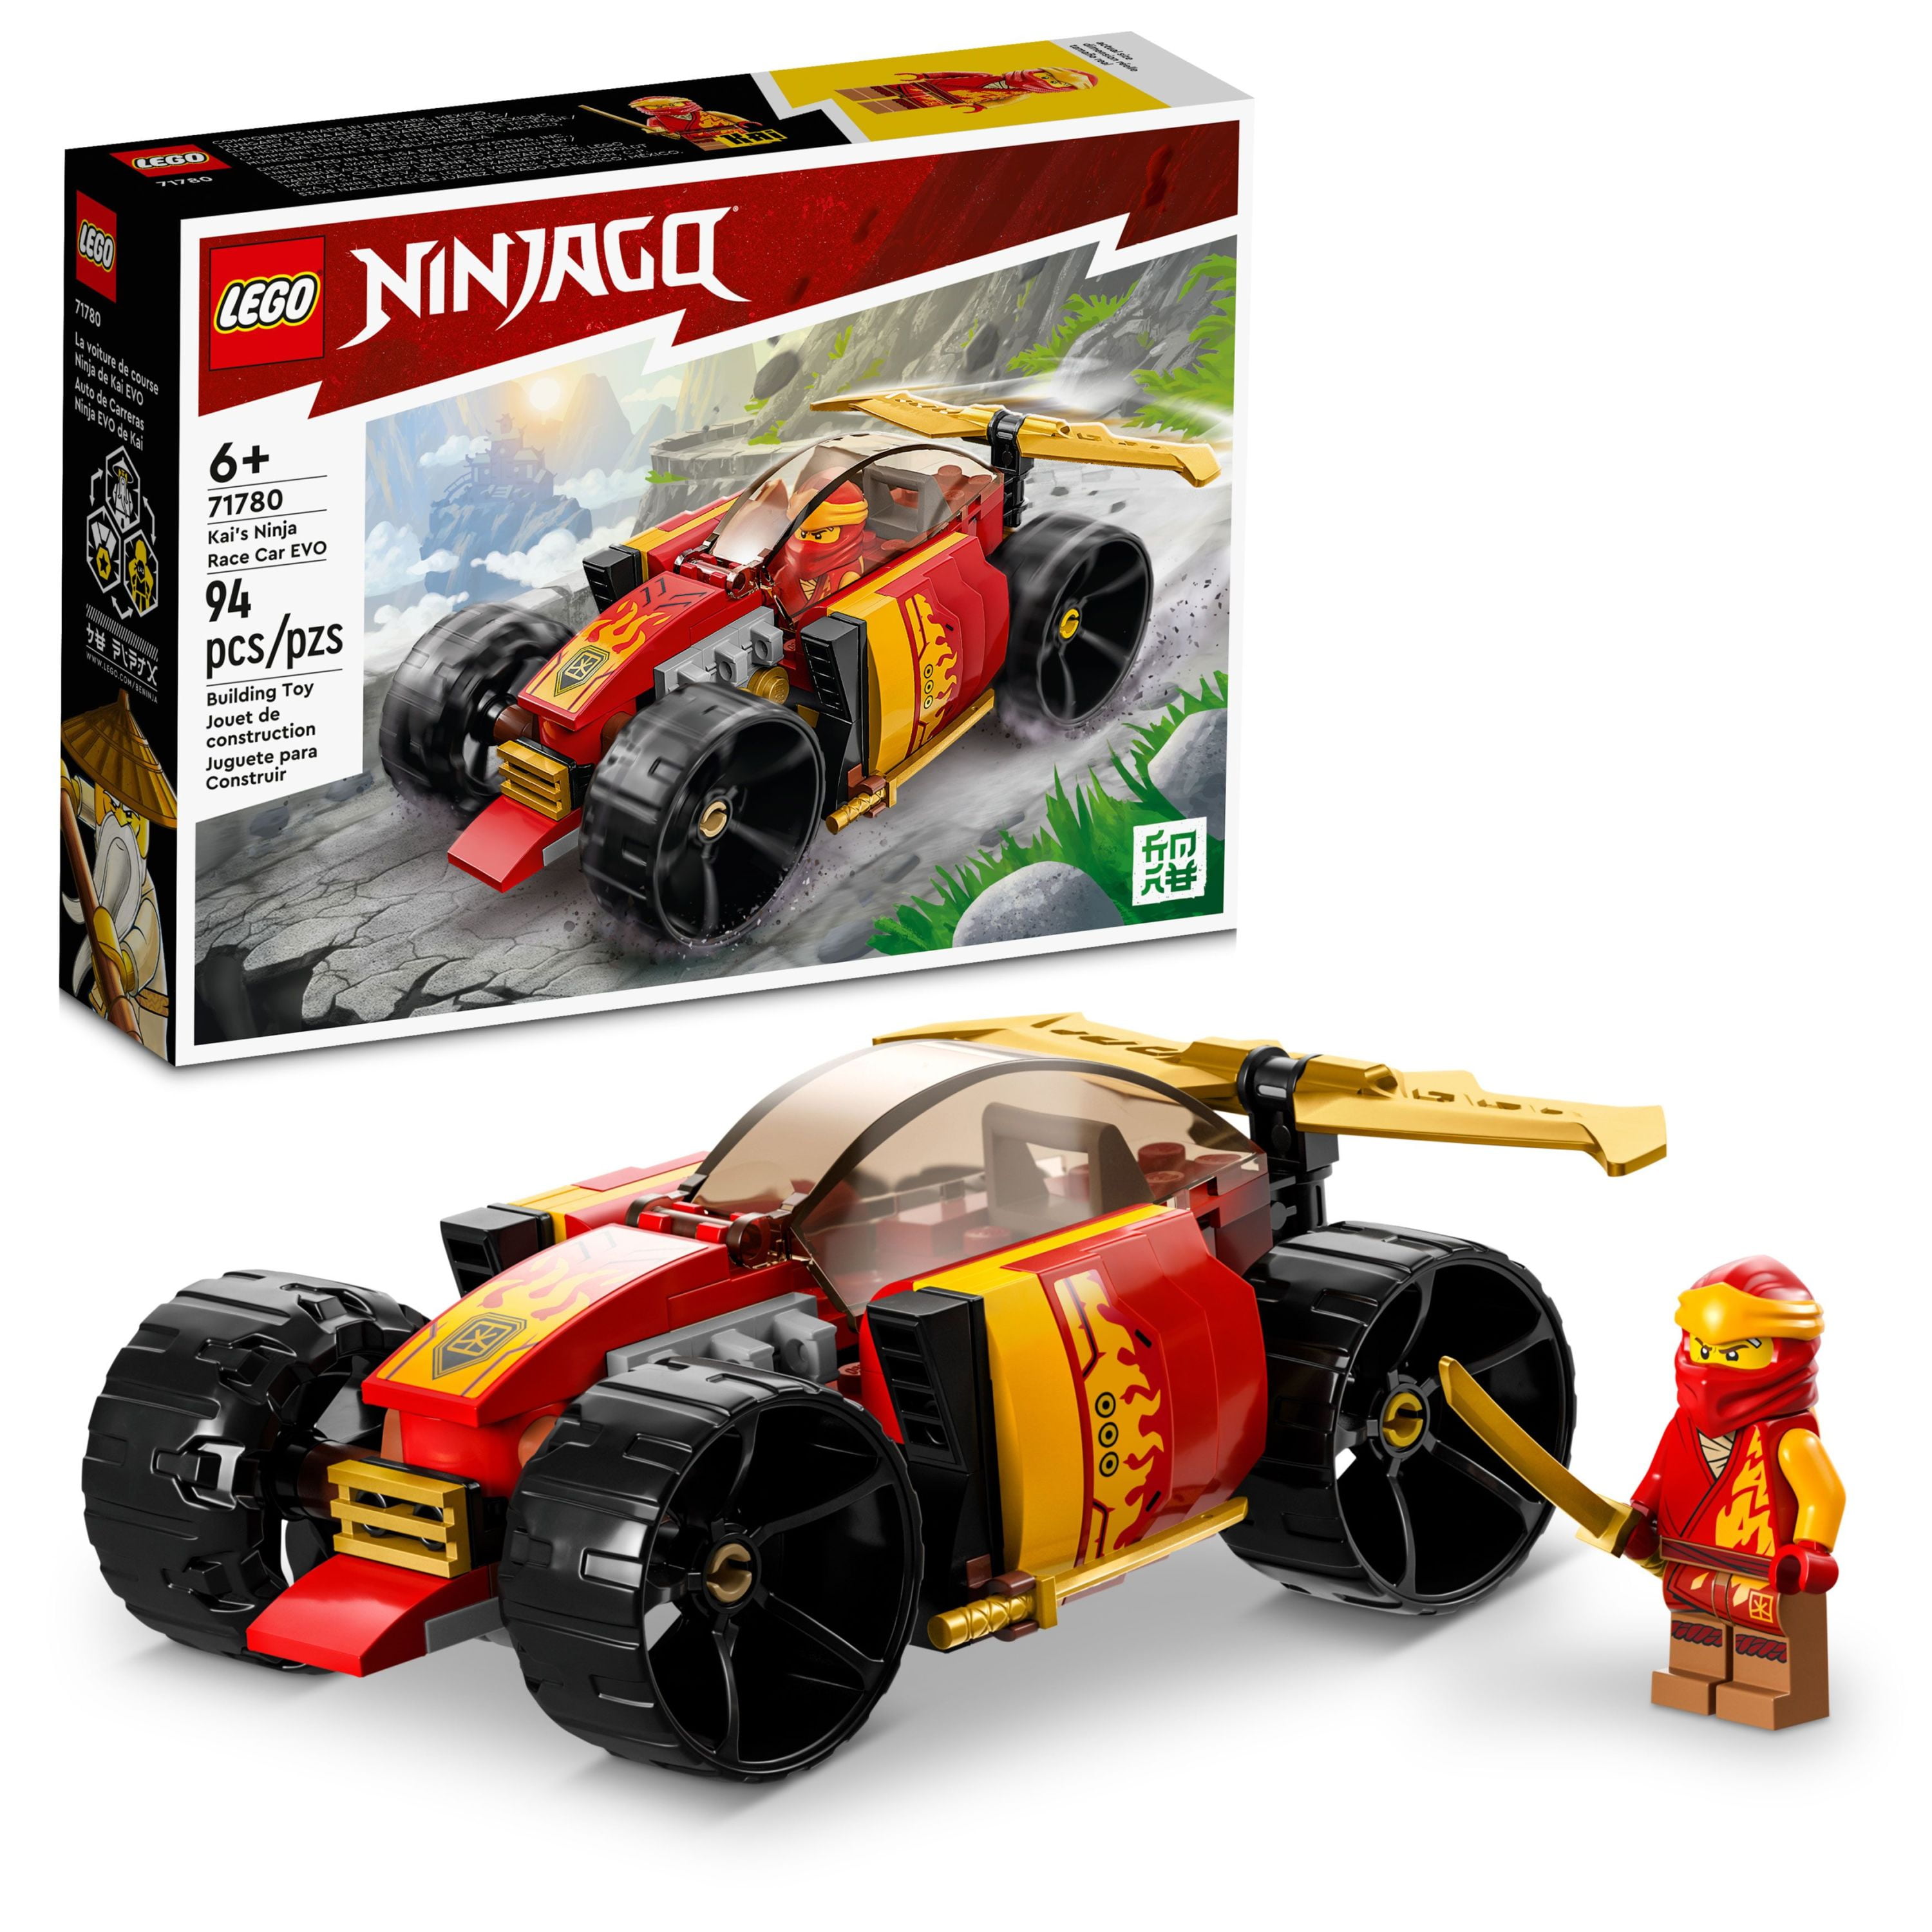 LEGO NINJAGO Kais Ninja Race Car EVO Toy Building Set 71780